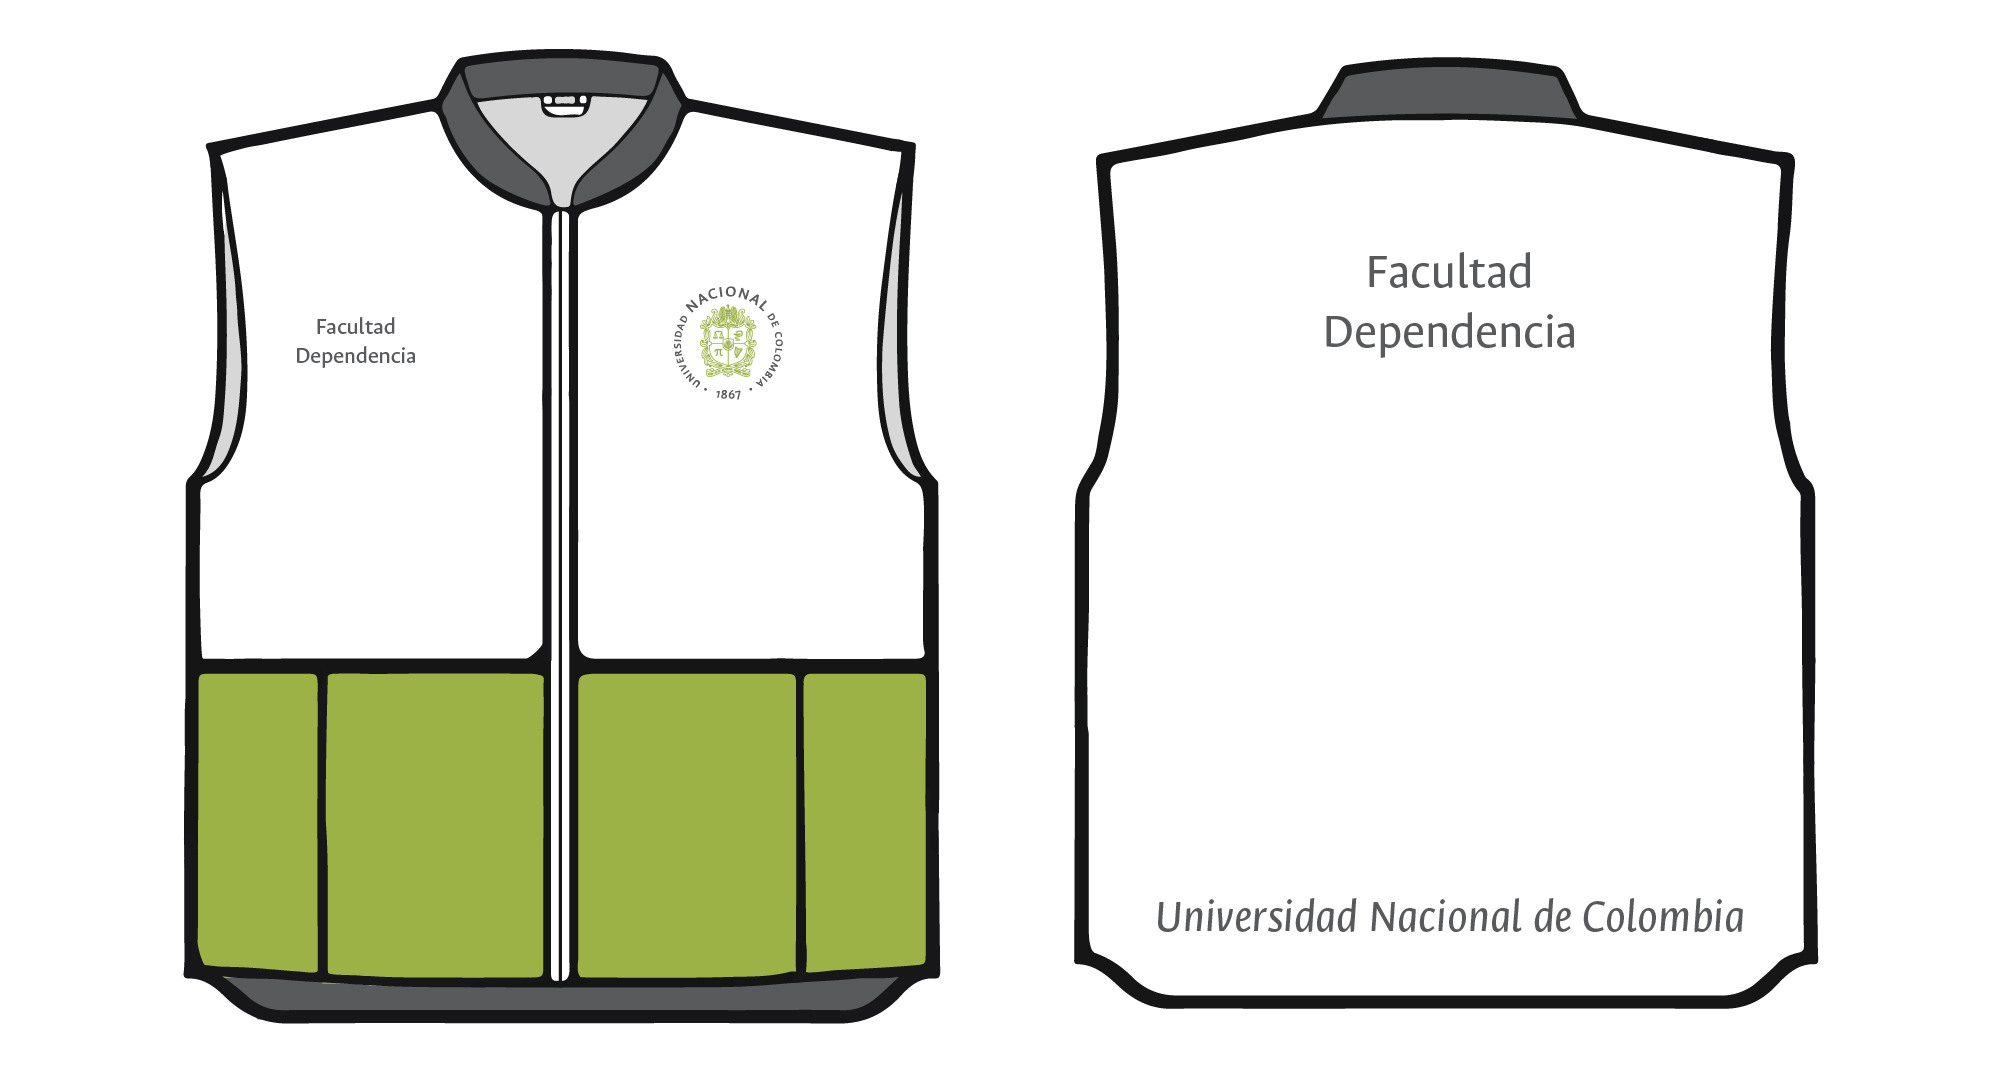 Aplicación del logosímbolo y firma institucional  en chaqueta, chalecos y camisas institucionales.  Logosímbolo circular verde (2 colores) sobre tela blanca.